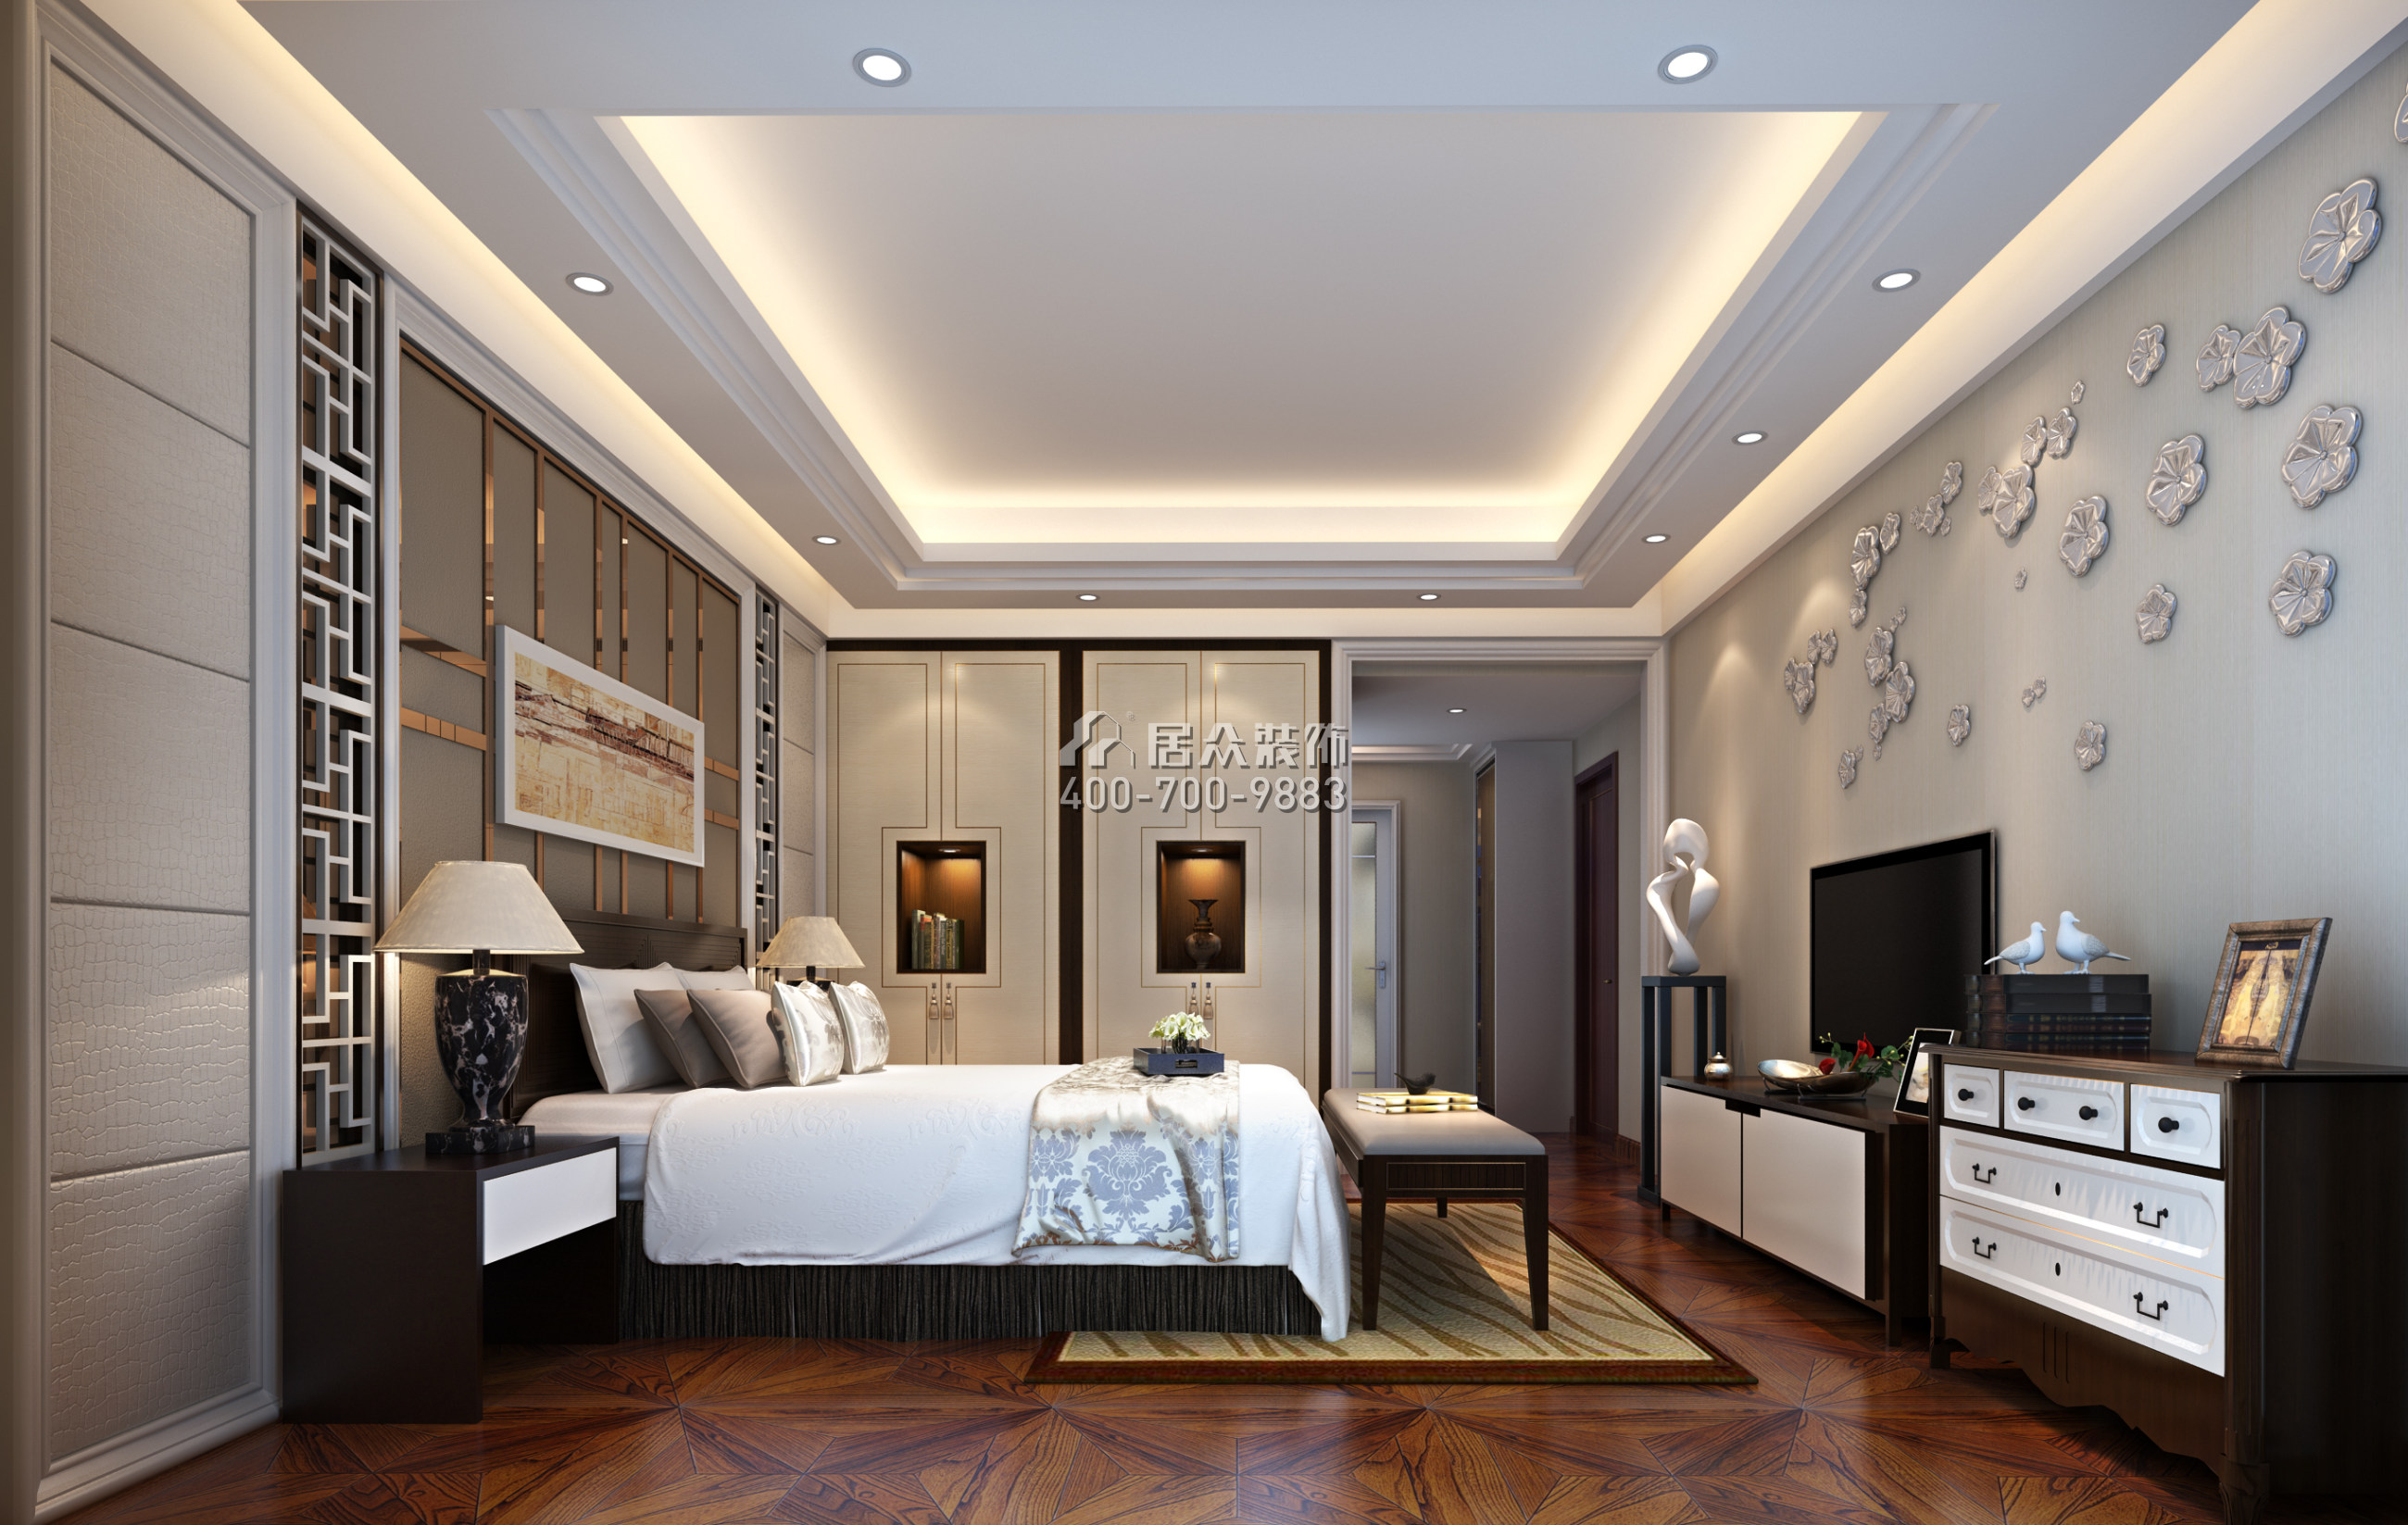 纯水岸十五期239平方米中式风格平层户型卧室装修效果图